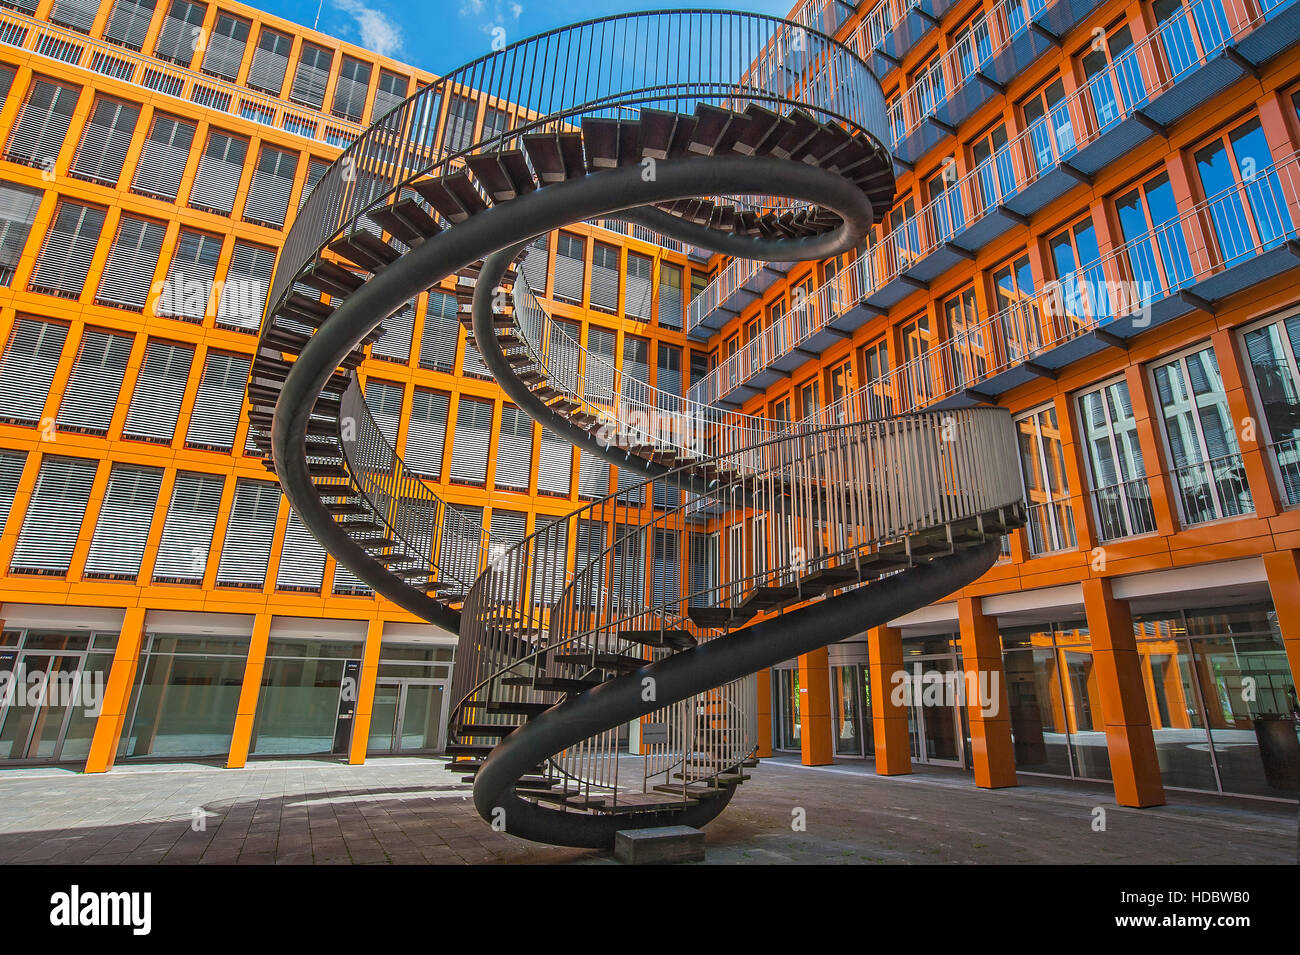 Infinitas escaleras, doble hélice, la escultura, el artista Olafur Eliasson, firma de auditoría KPMG, Westend, Schwantalerhöhe, Munich Foto de stock